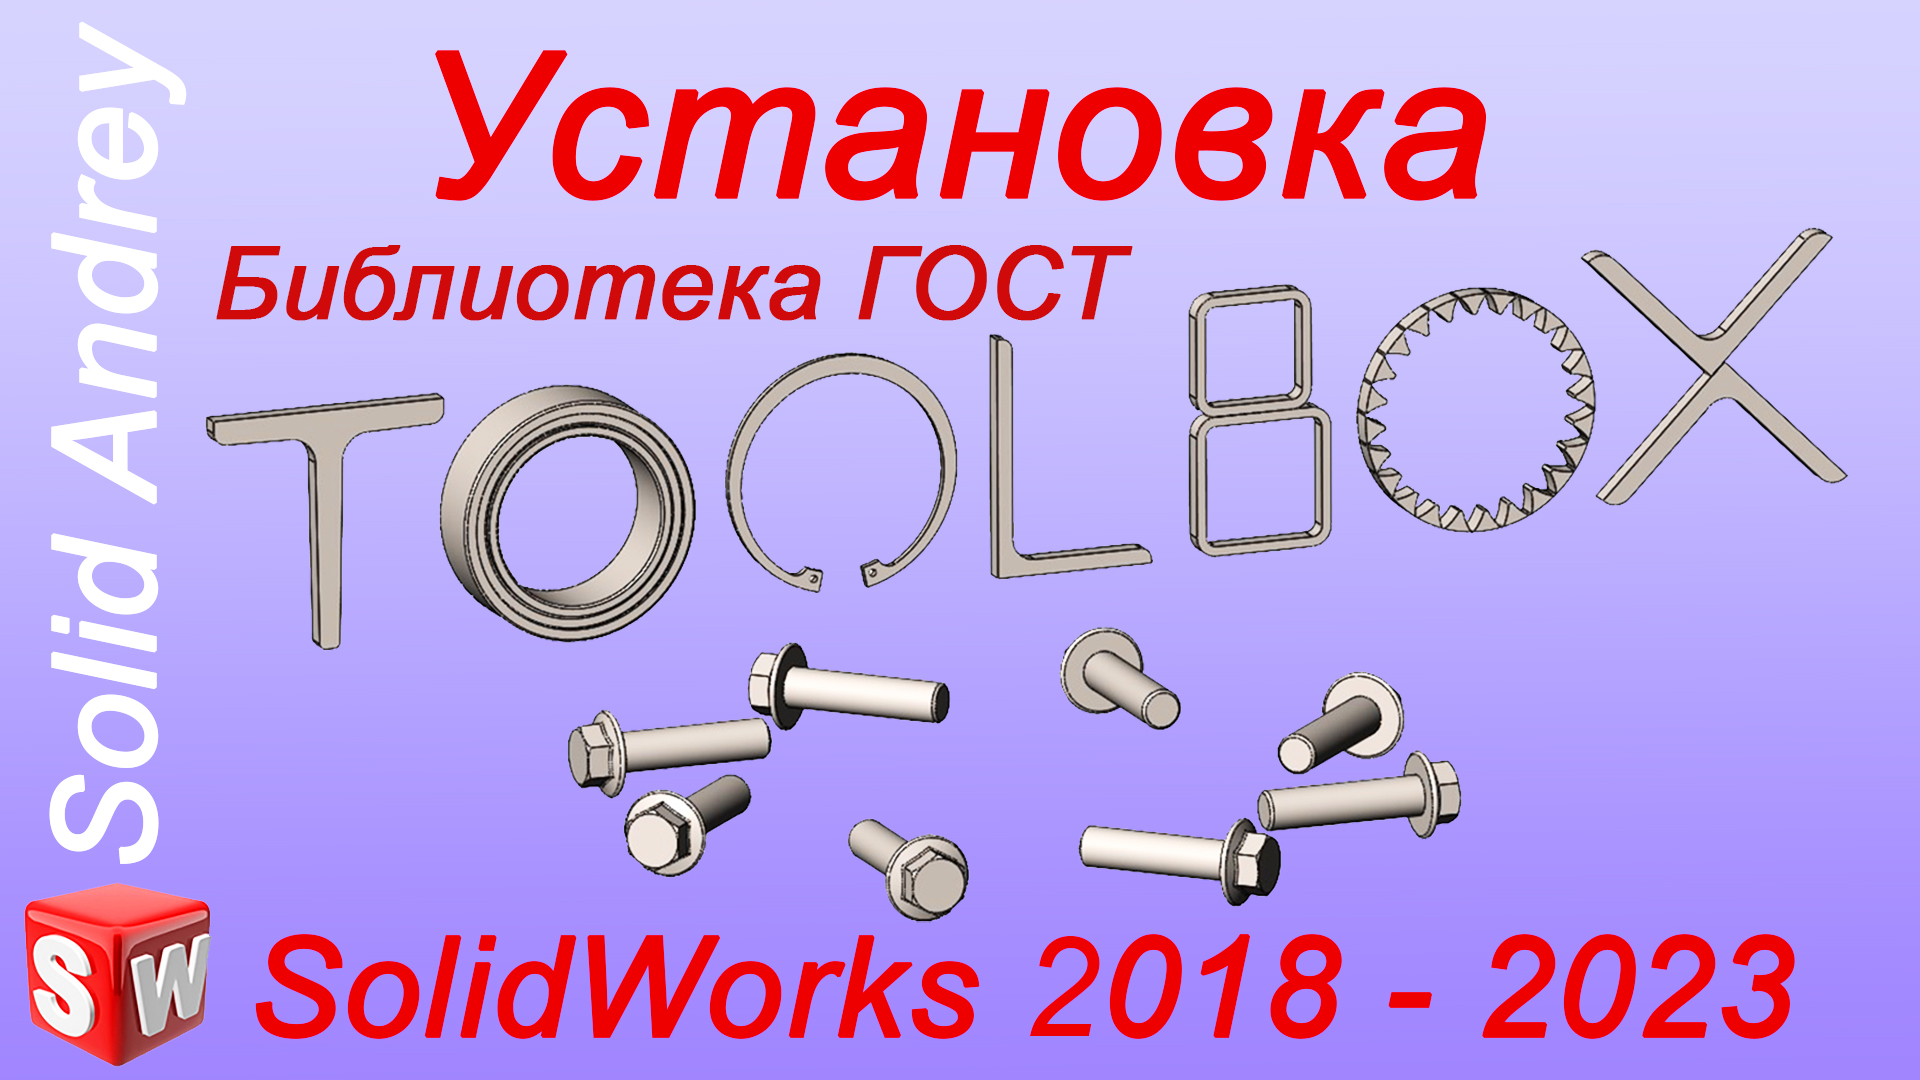 SolidWorks 2018-2023. Toolbox: установка и настройка. Библиотека ГОСТ